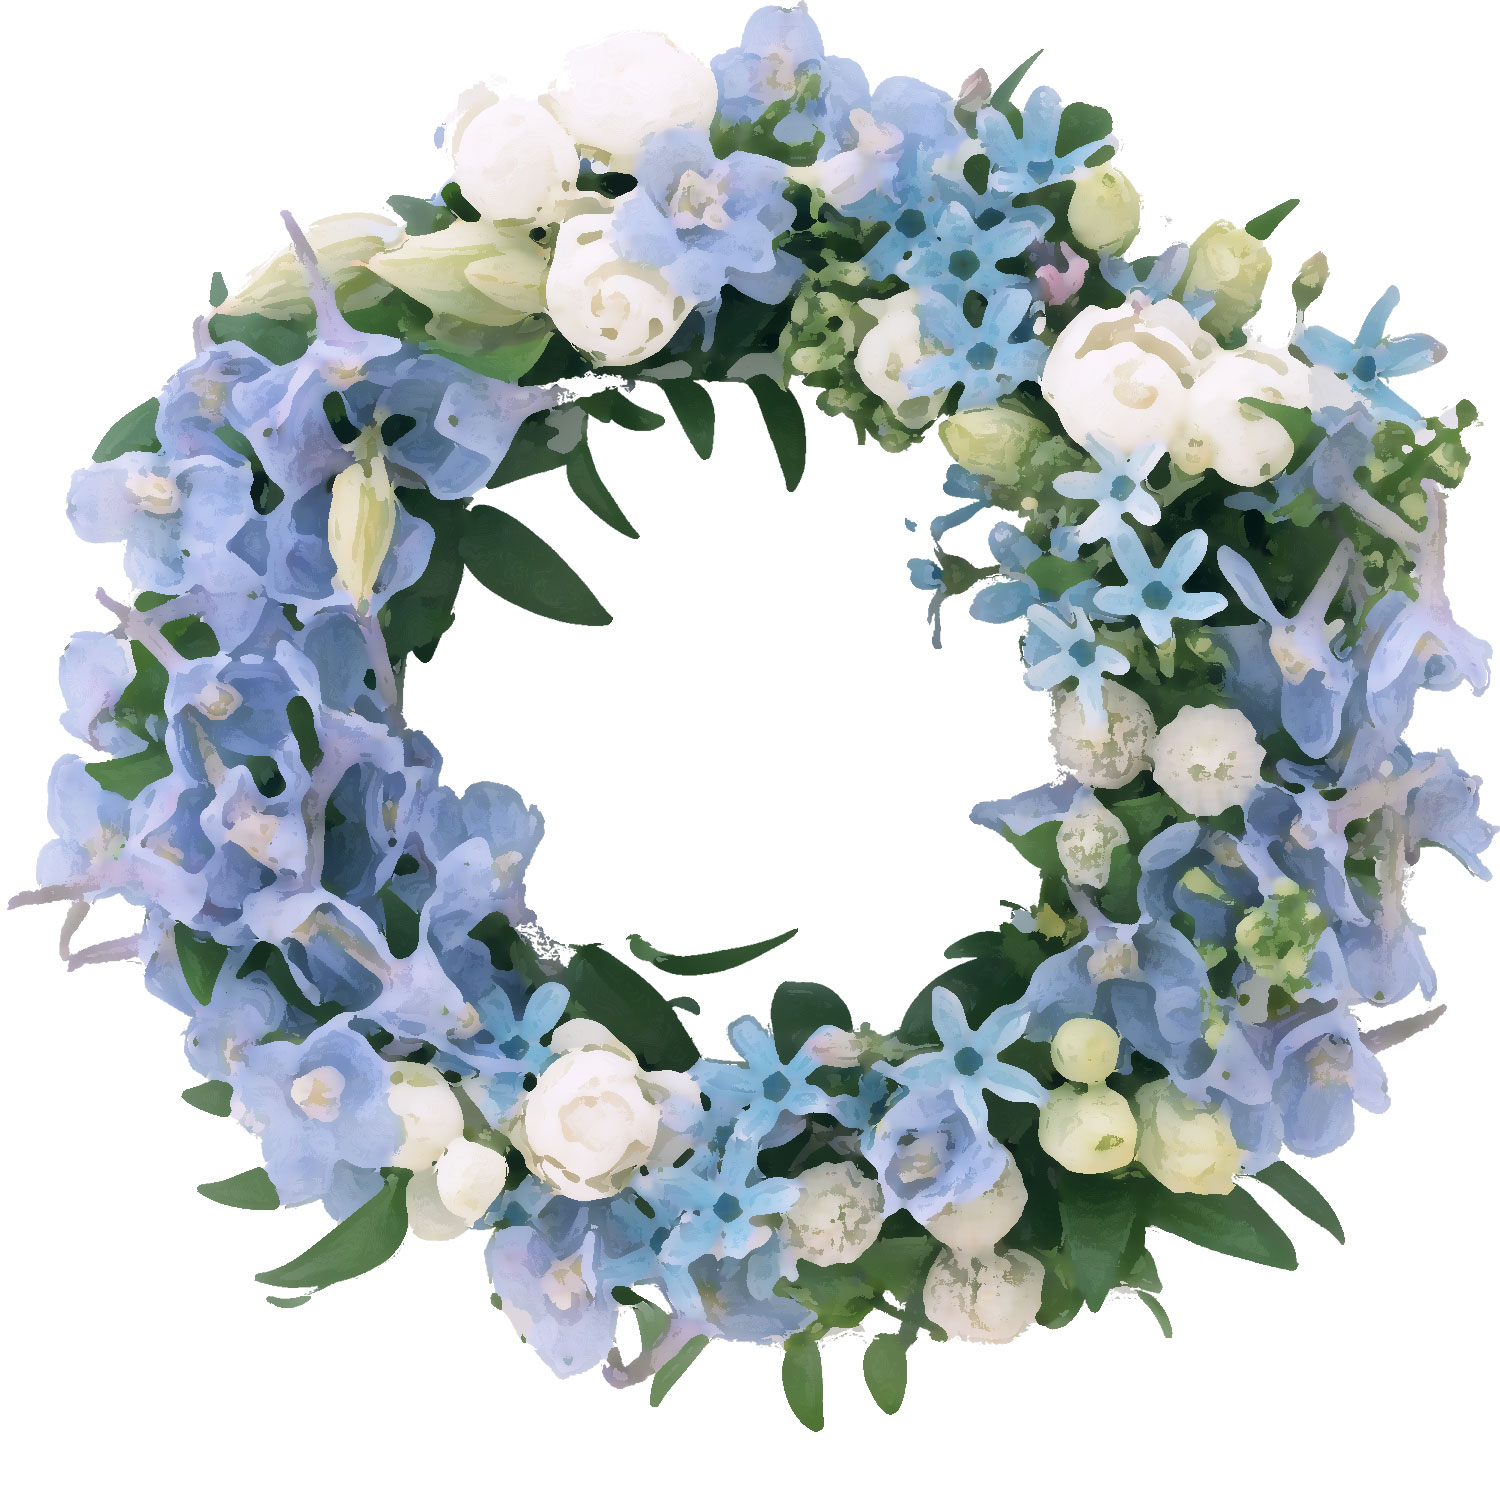 花のイラスト フリー素材 フレーム枠no 190 青 水色 白 緑葉